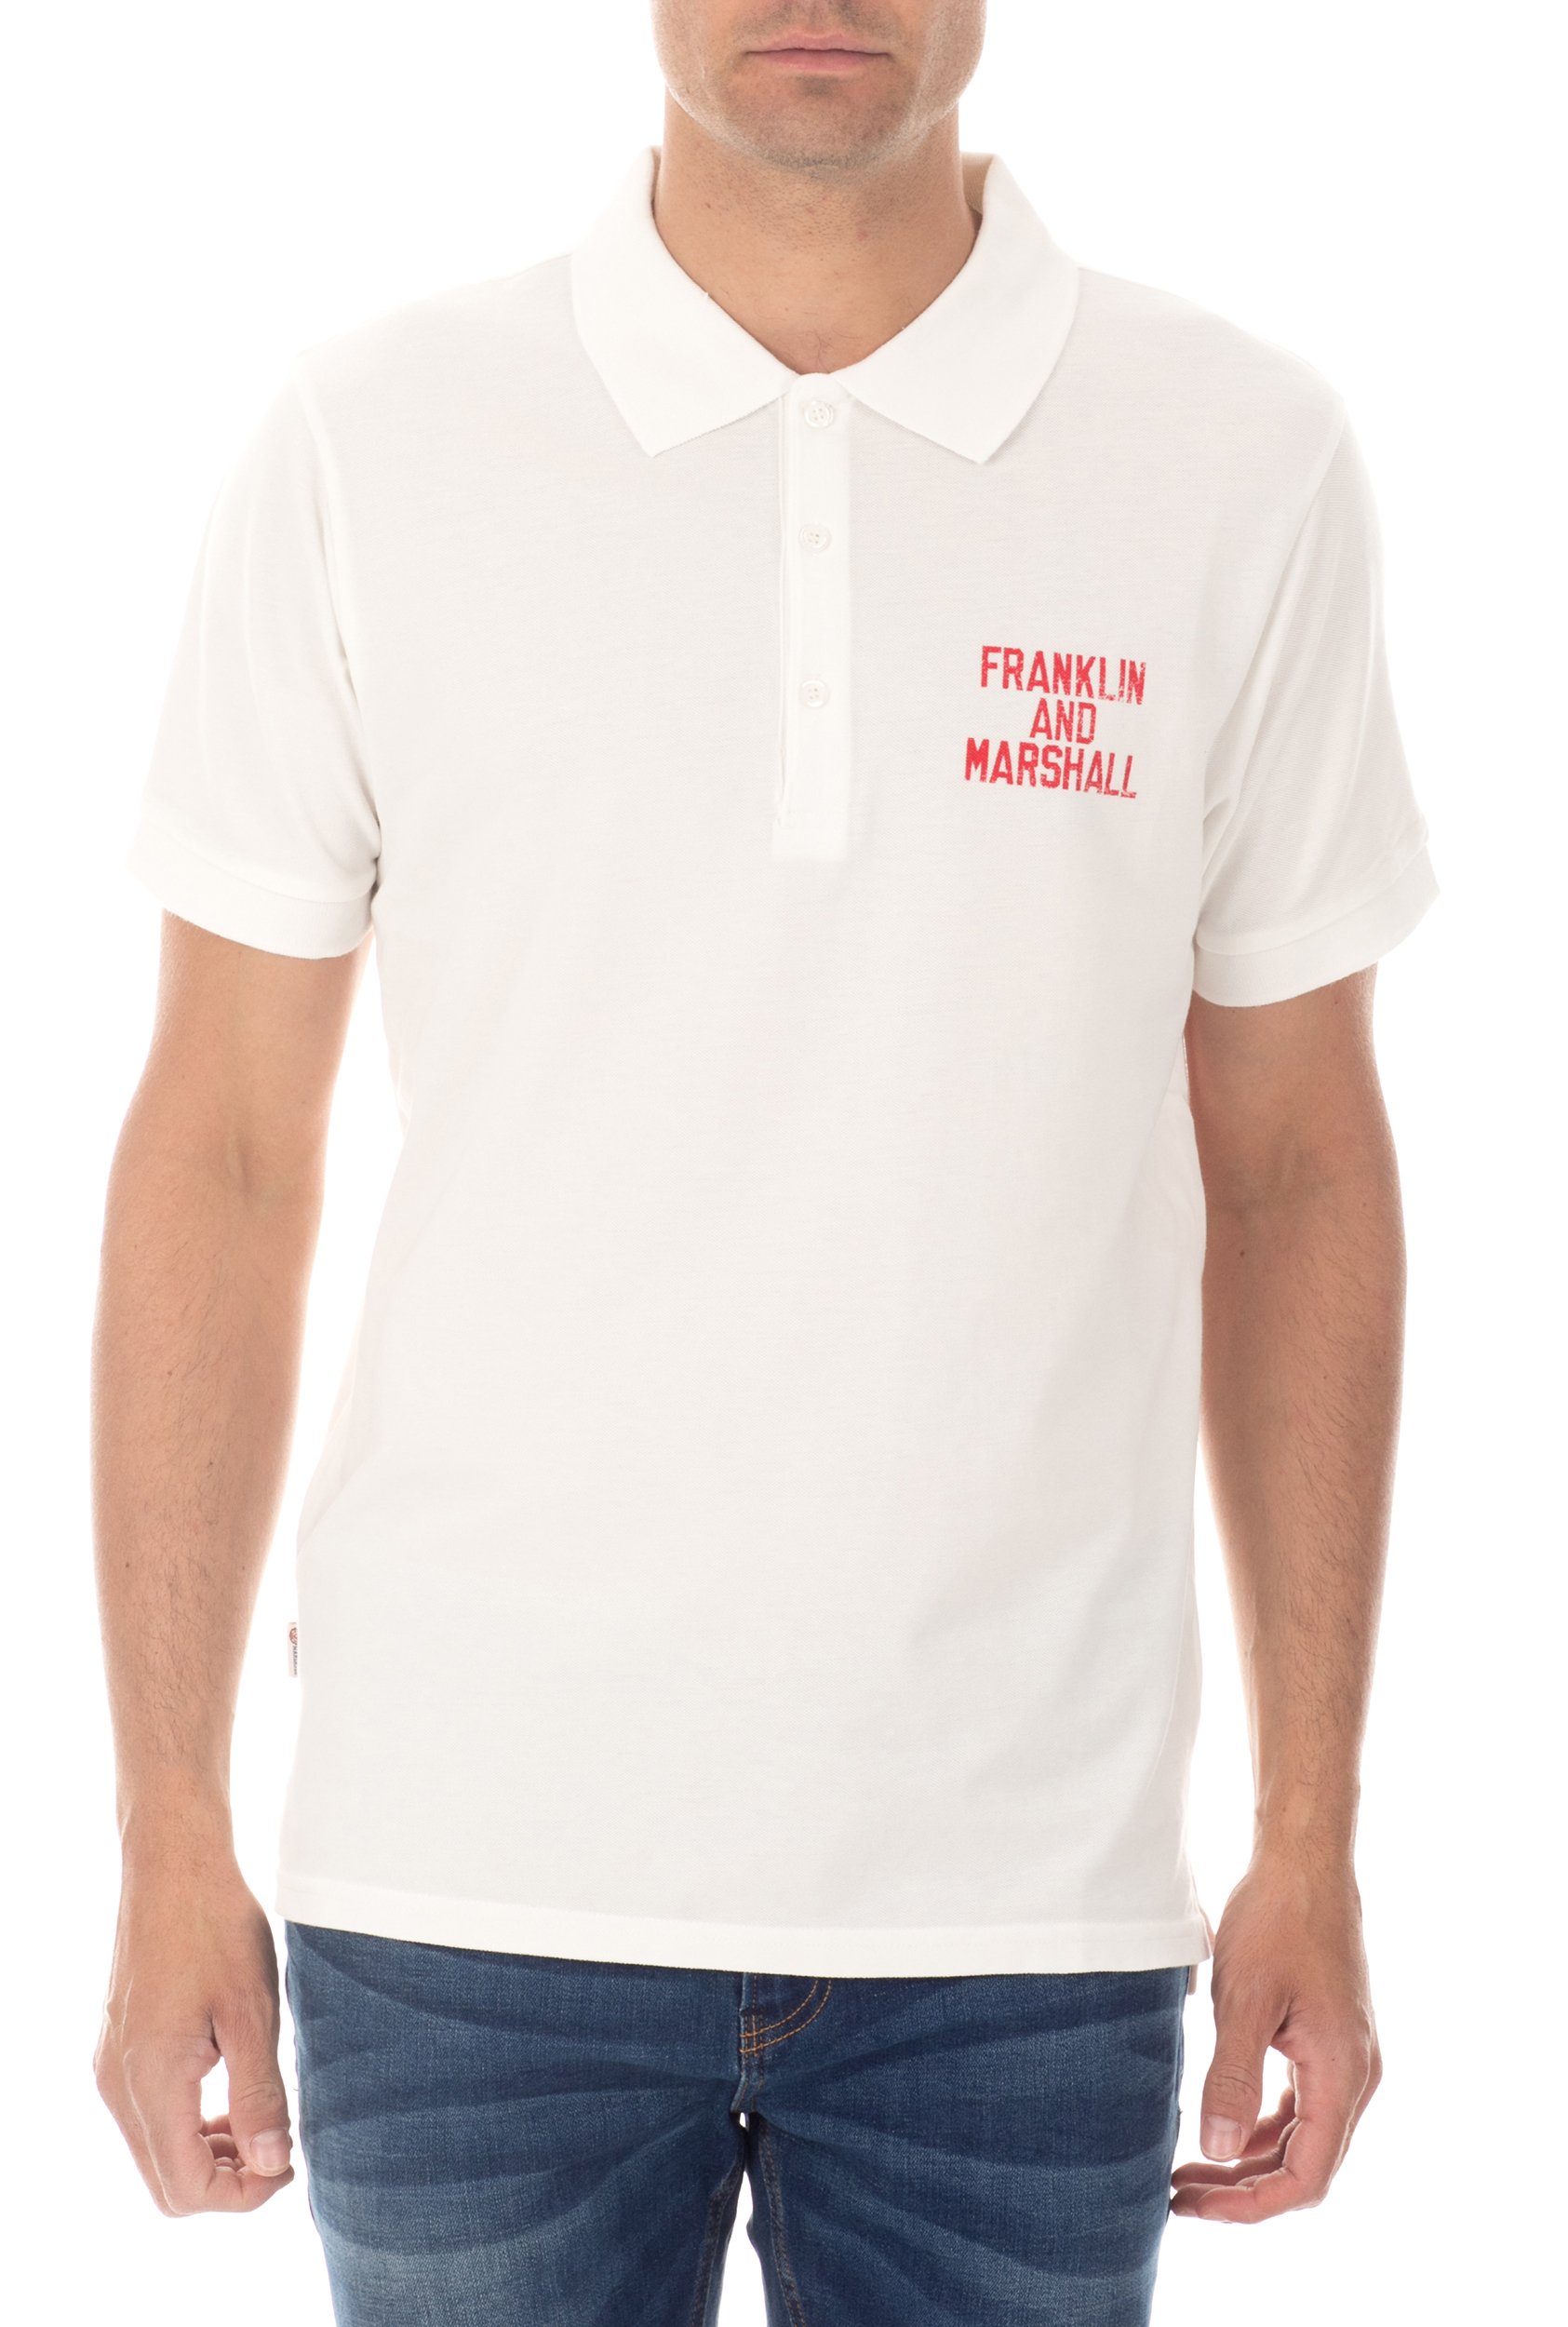 Ανδρικά/Ρούχα/Μπλούζες/Πόλο FRANKLIN & MARSHALL - Ανδρική κοντομάνικη μπλούζα polo FRANKLIN & MARSHALL λευκή